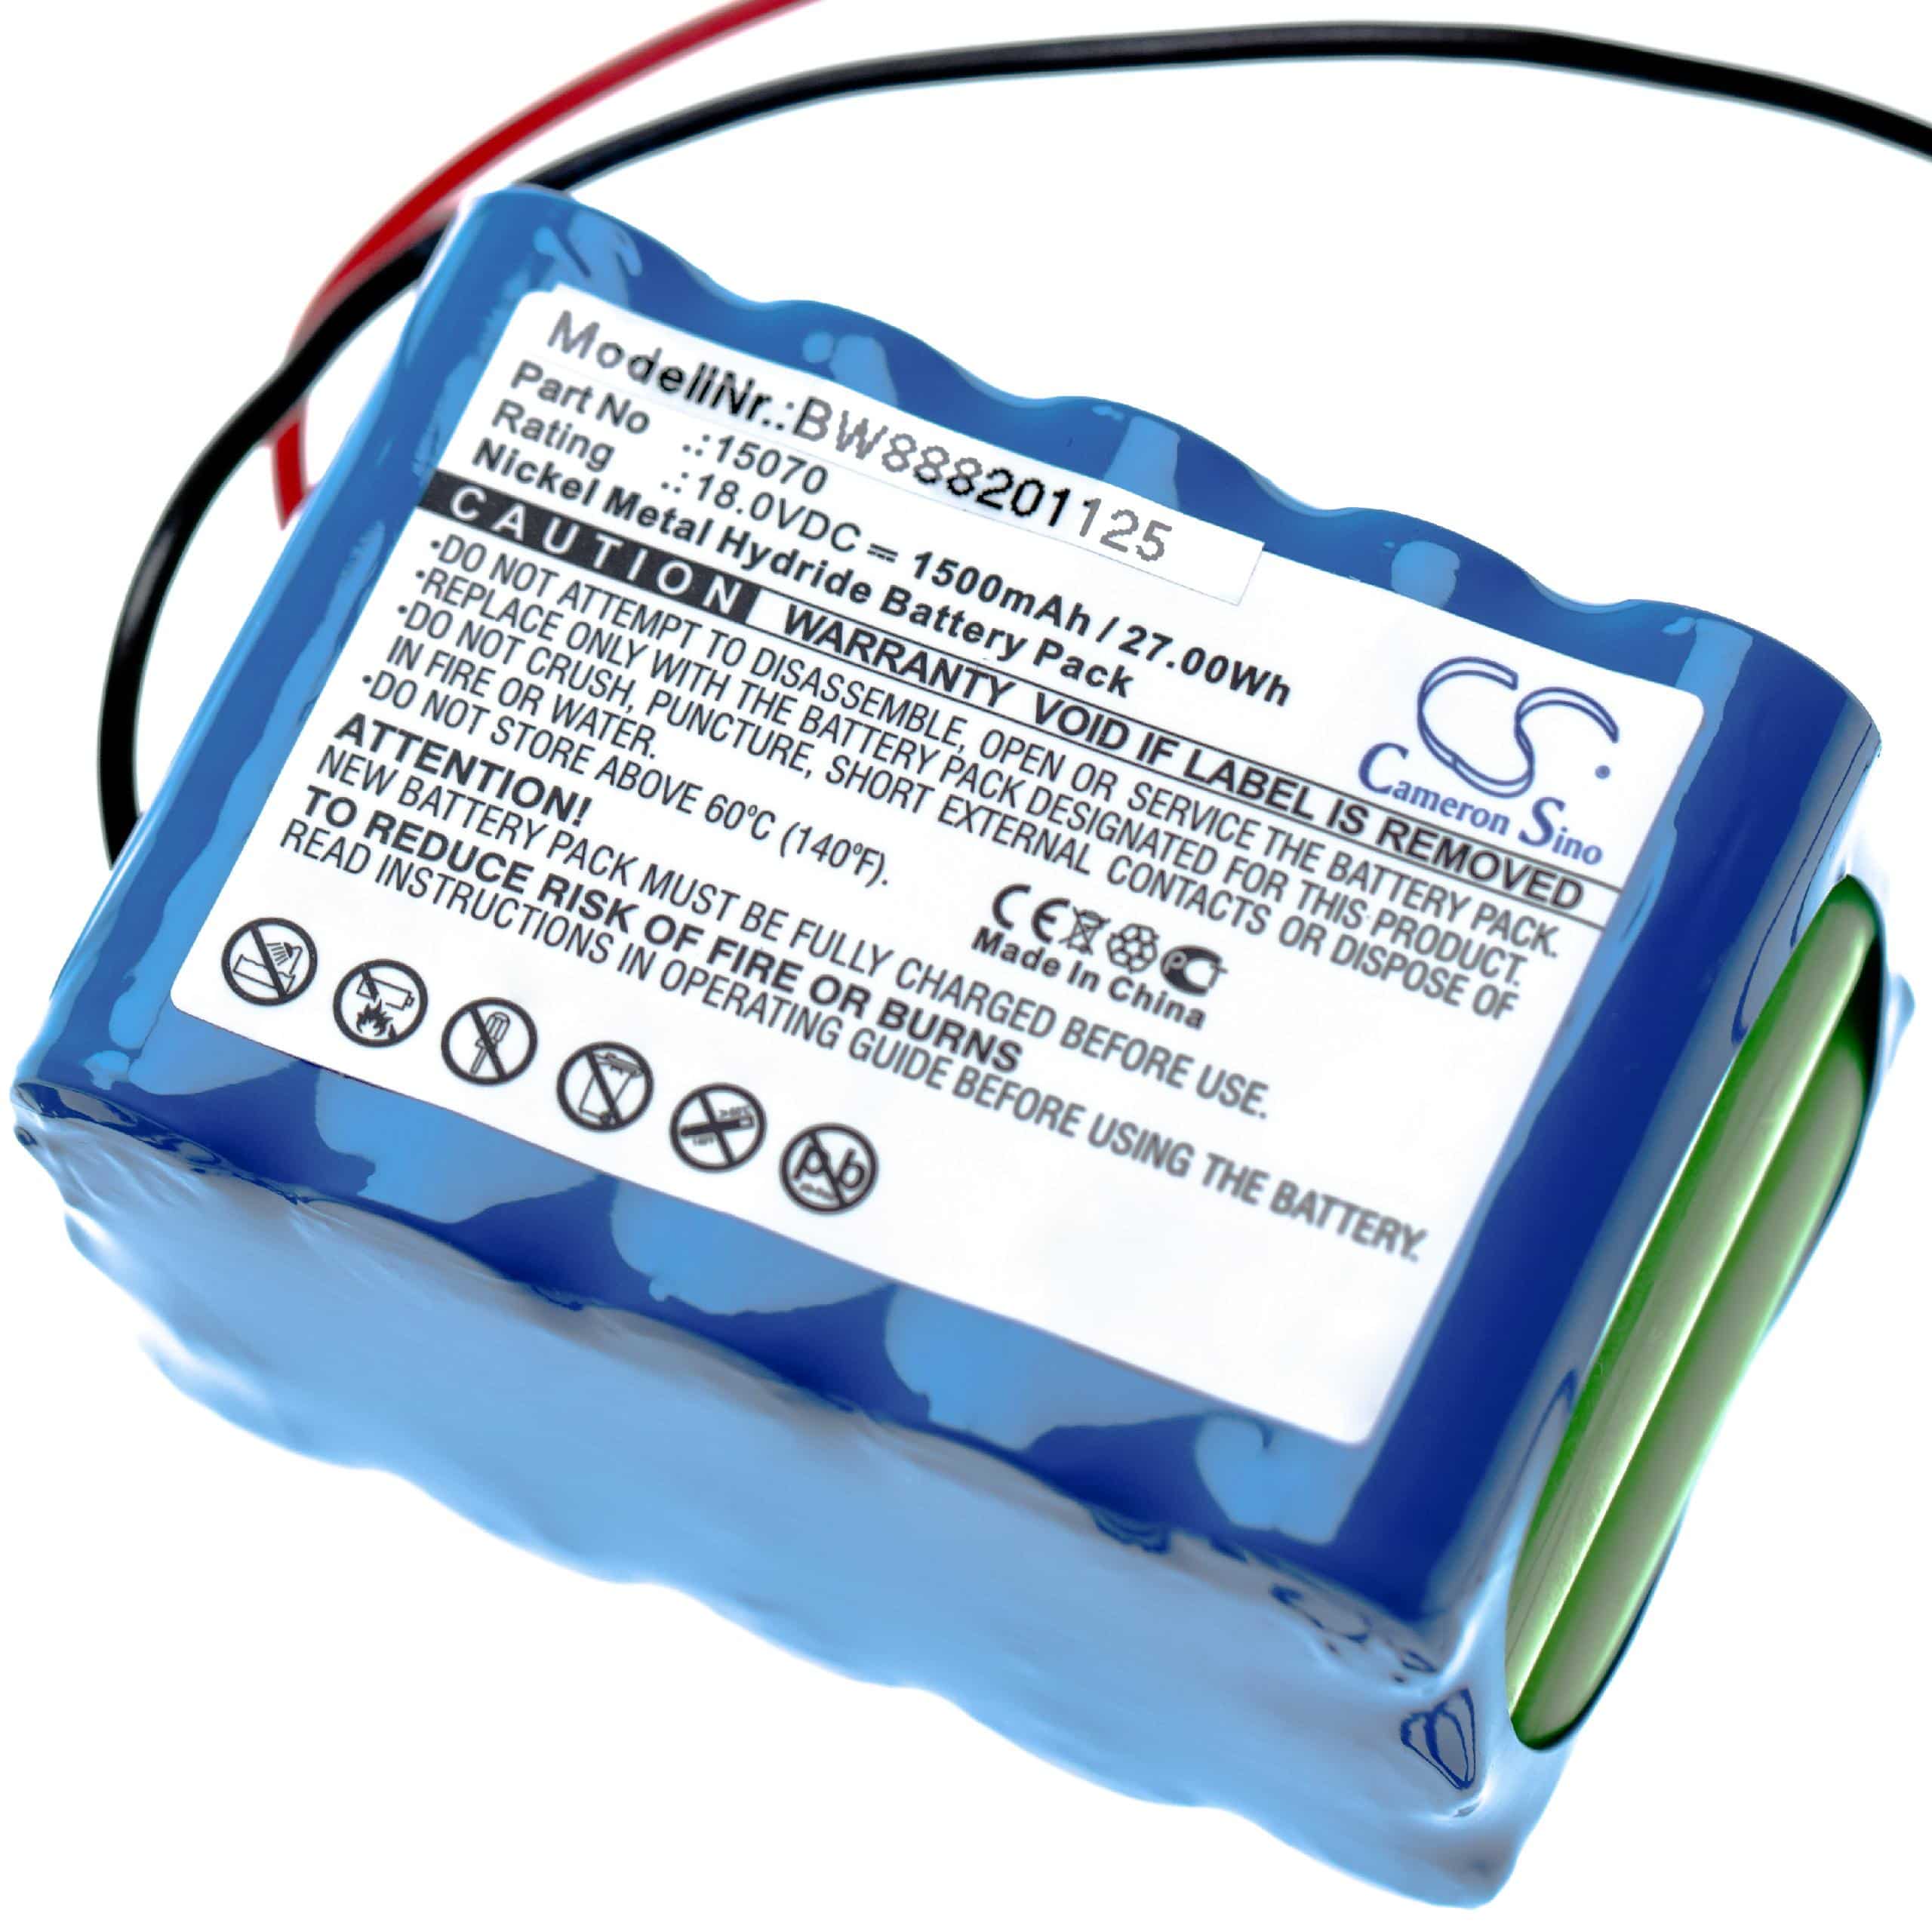 Batterie remplace Besam 15070, 15VREAAL700R, 15VREAAL pour porte coulissante électrique - 1500mAh 18V NiMH